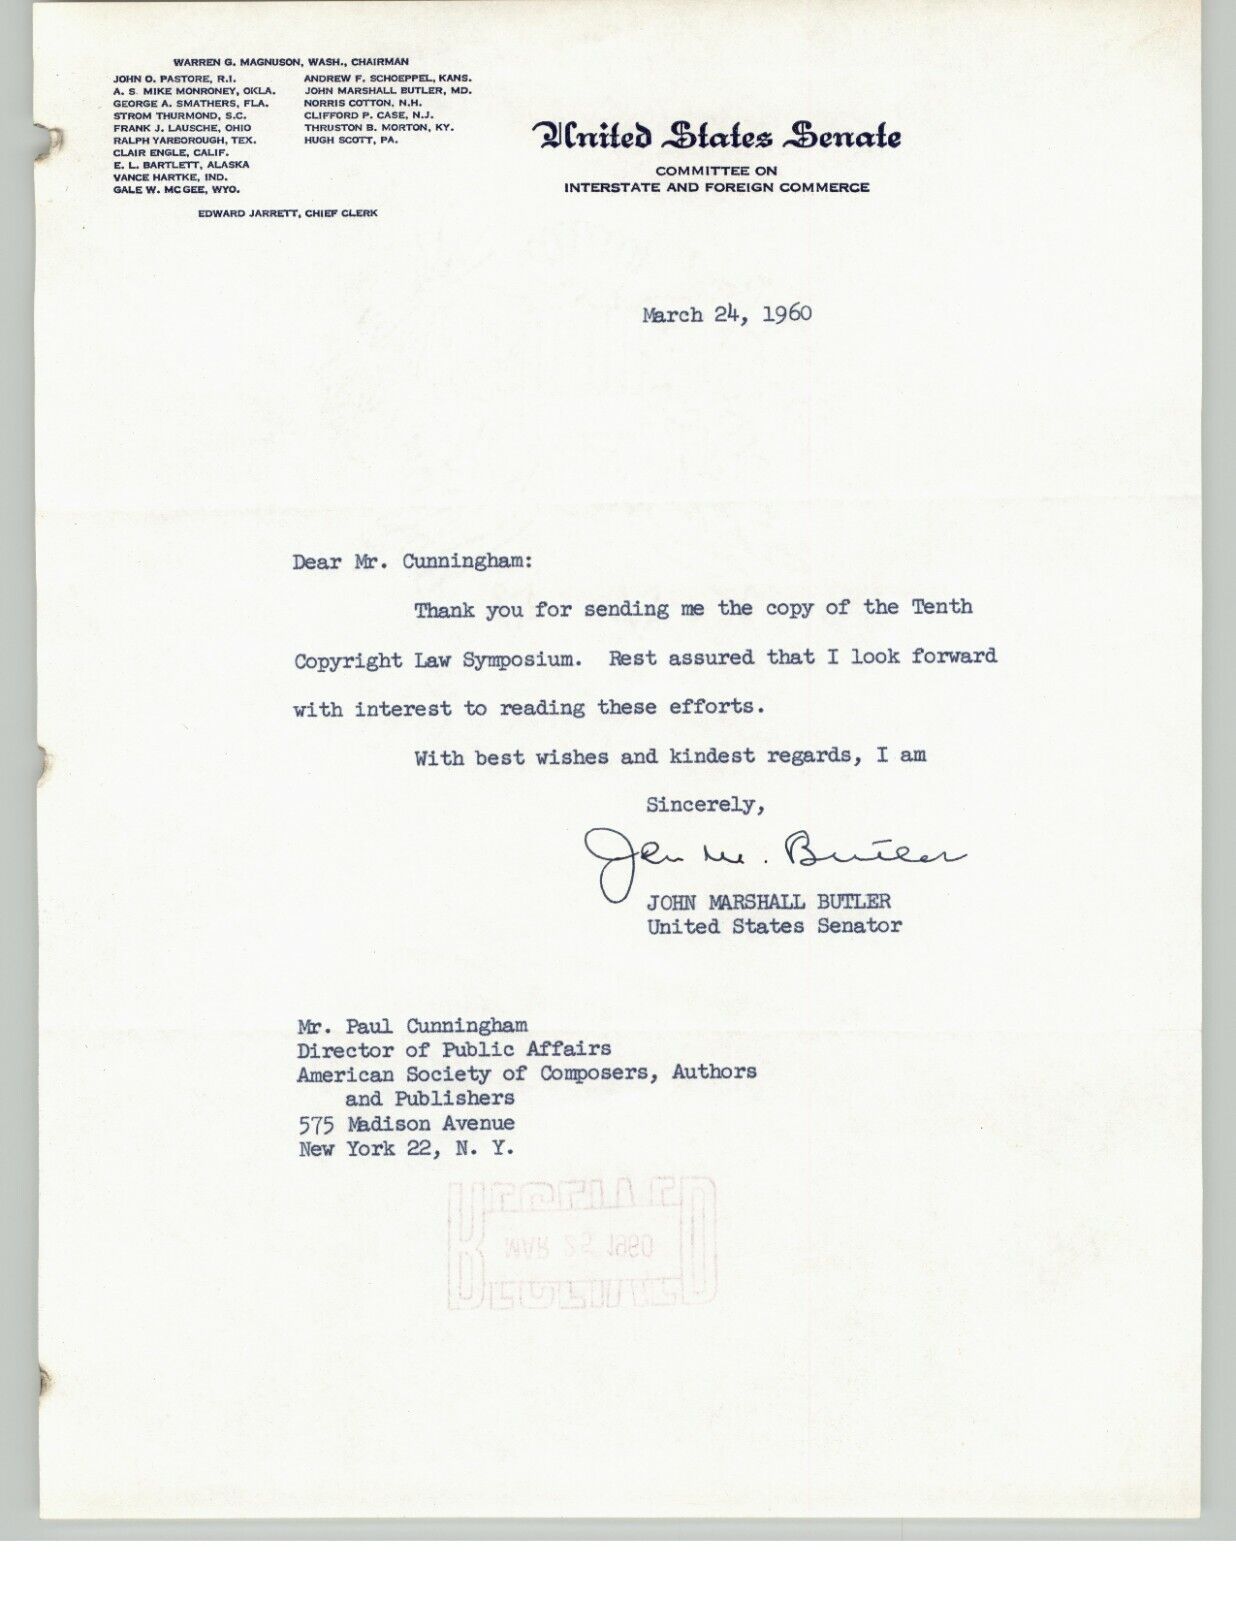 Senator John Marshall Butler Signed Letter to Paul Cunningham ASCAP 1960